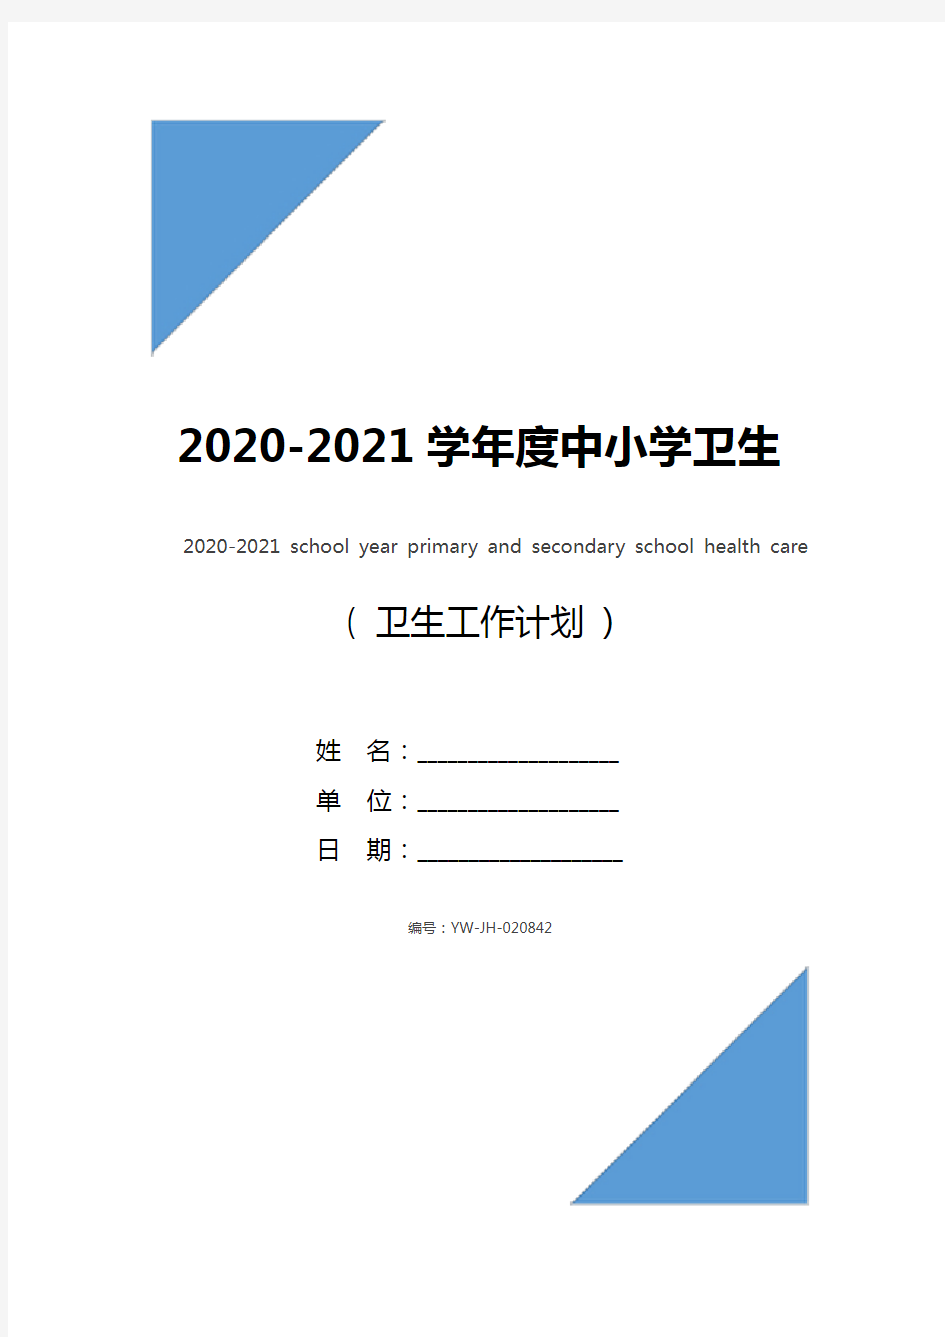 2020-2021学年度中小学卫生保健工作计划